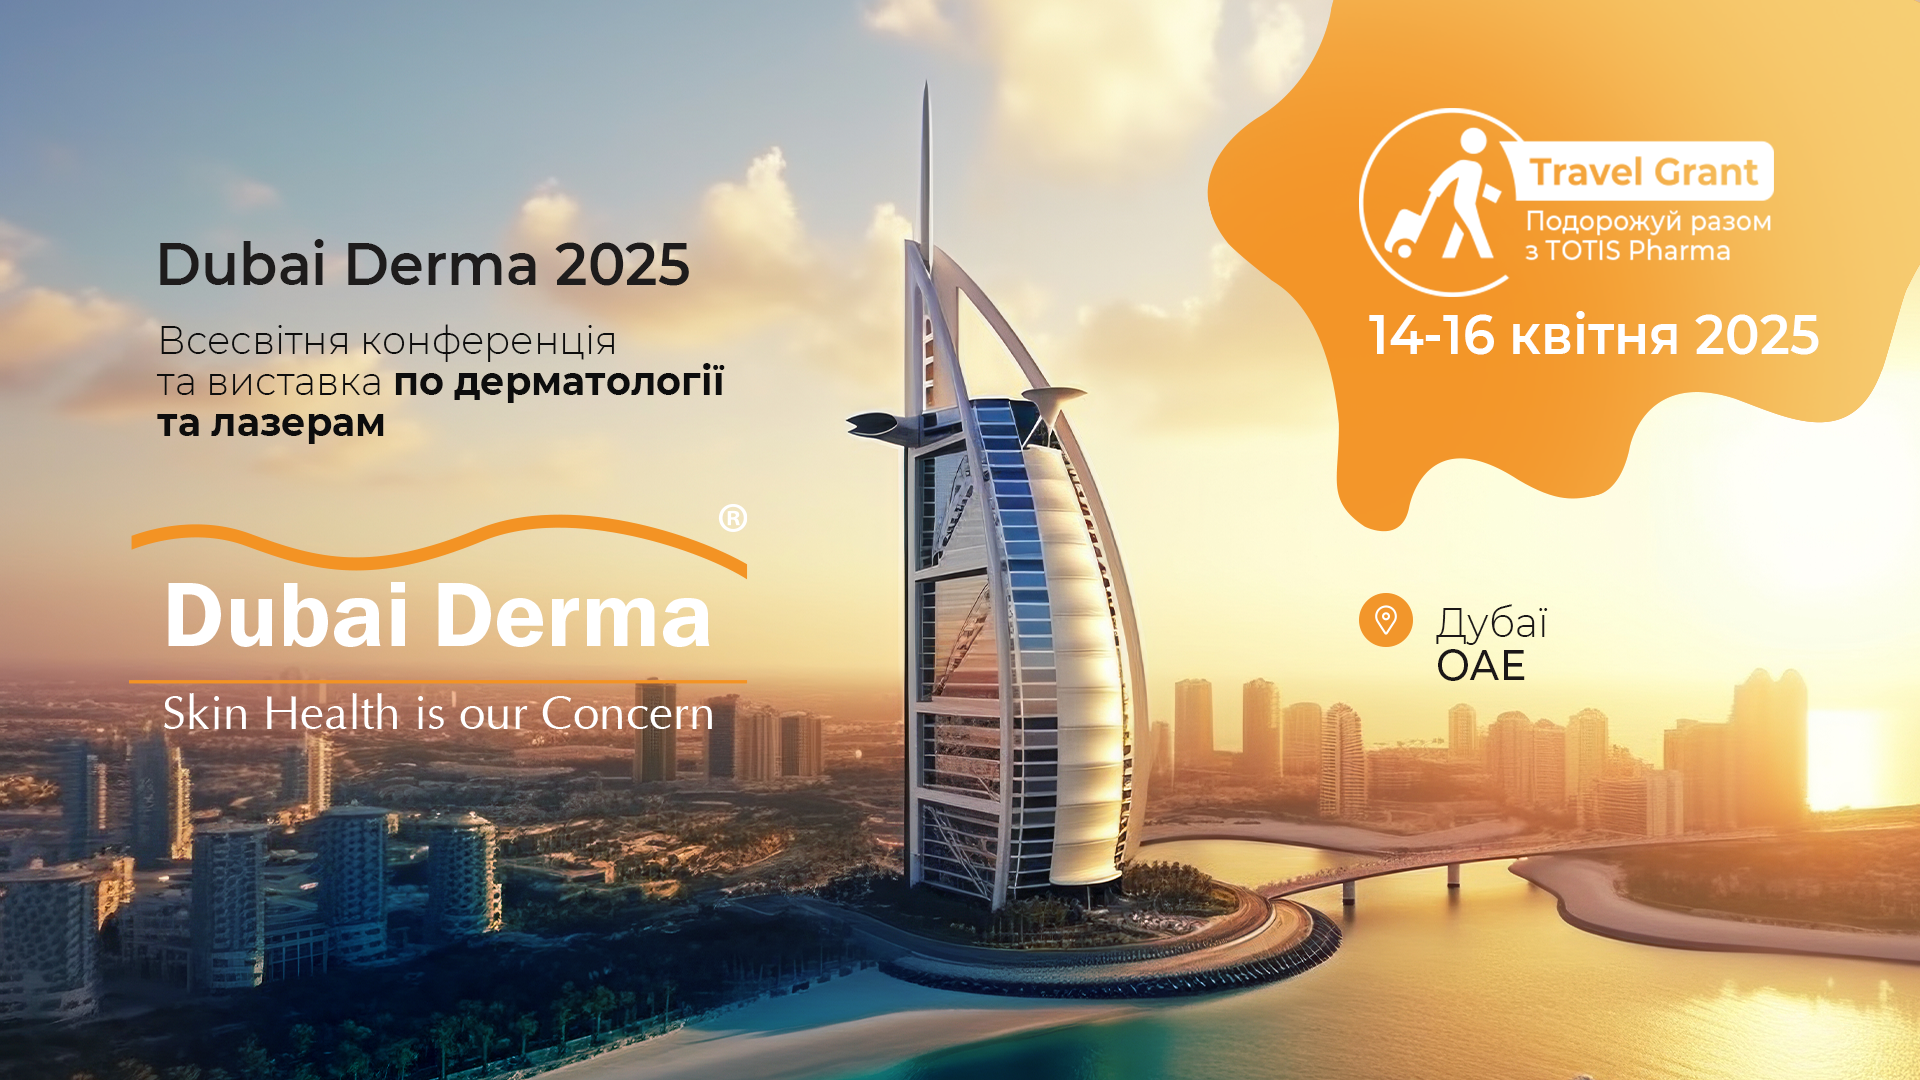 Dubai Derma World Congress 2025